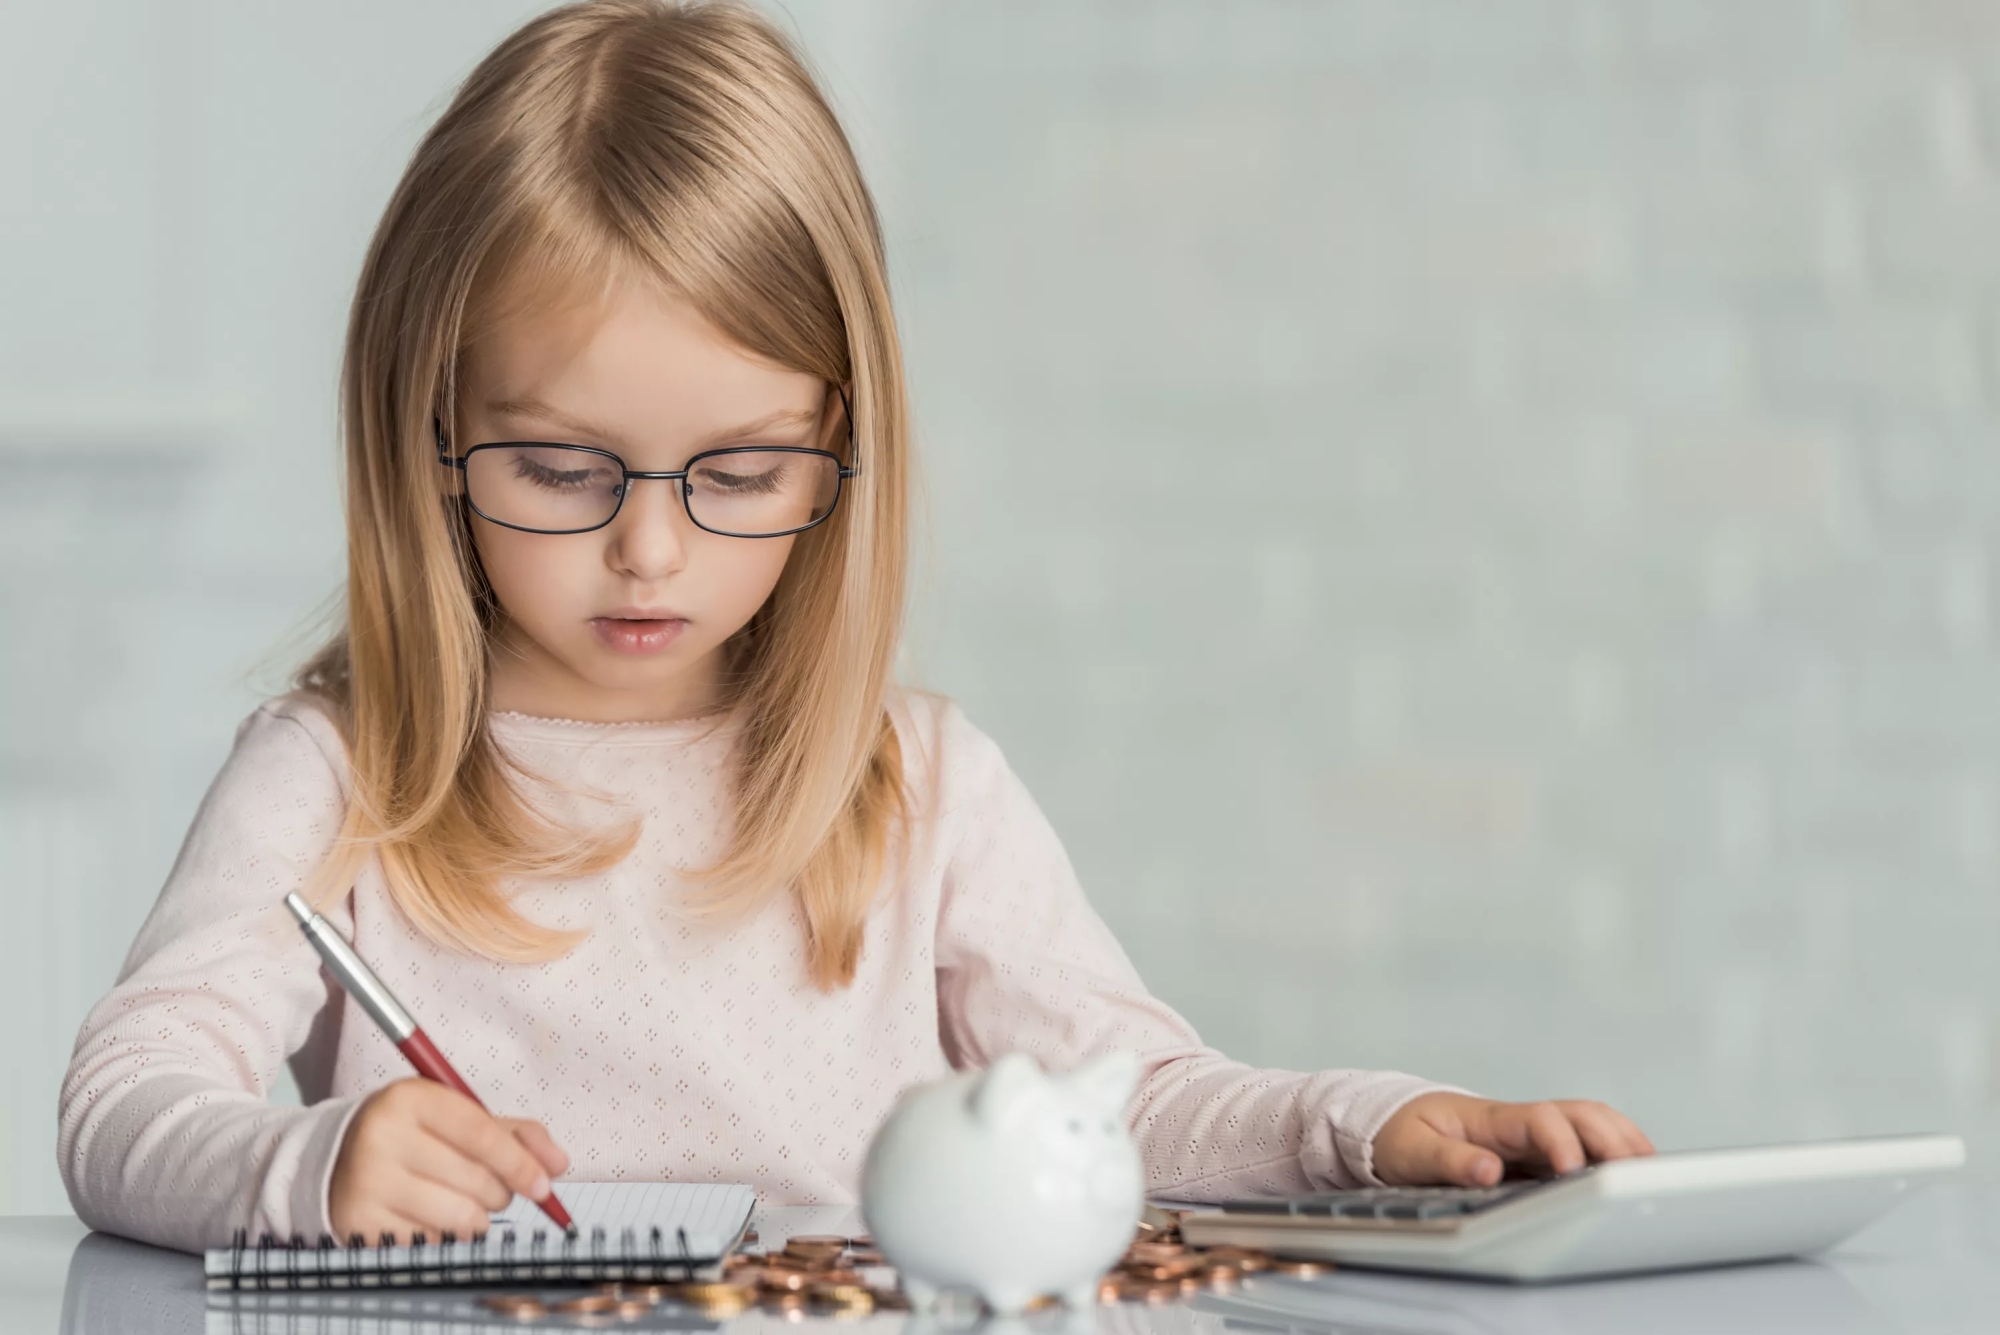 Финансовая грамотность для ребенка — что нужно знать о деньгах в зависимости от возраста